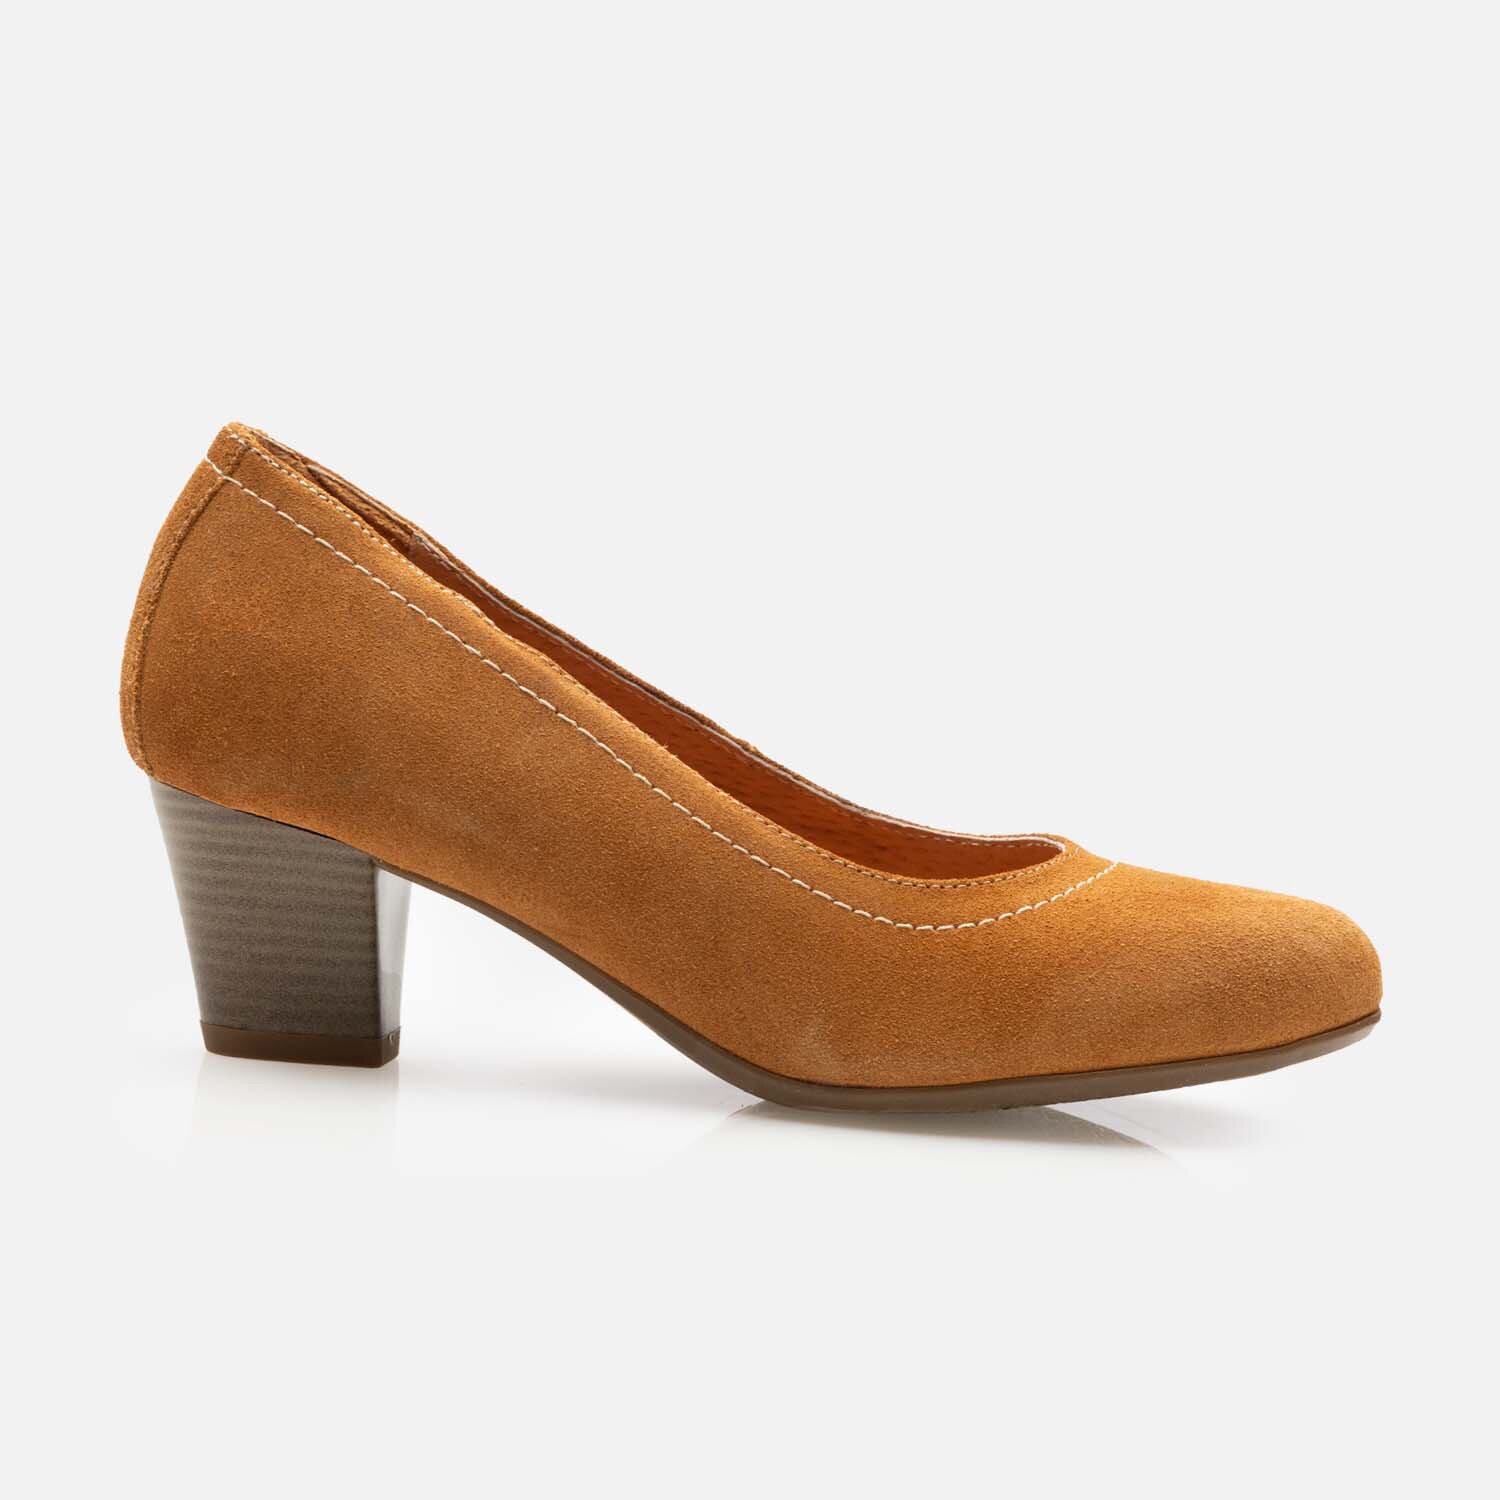 Pantofi casual cu toc dama din piele naturala - 022 cognac velur